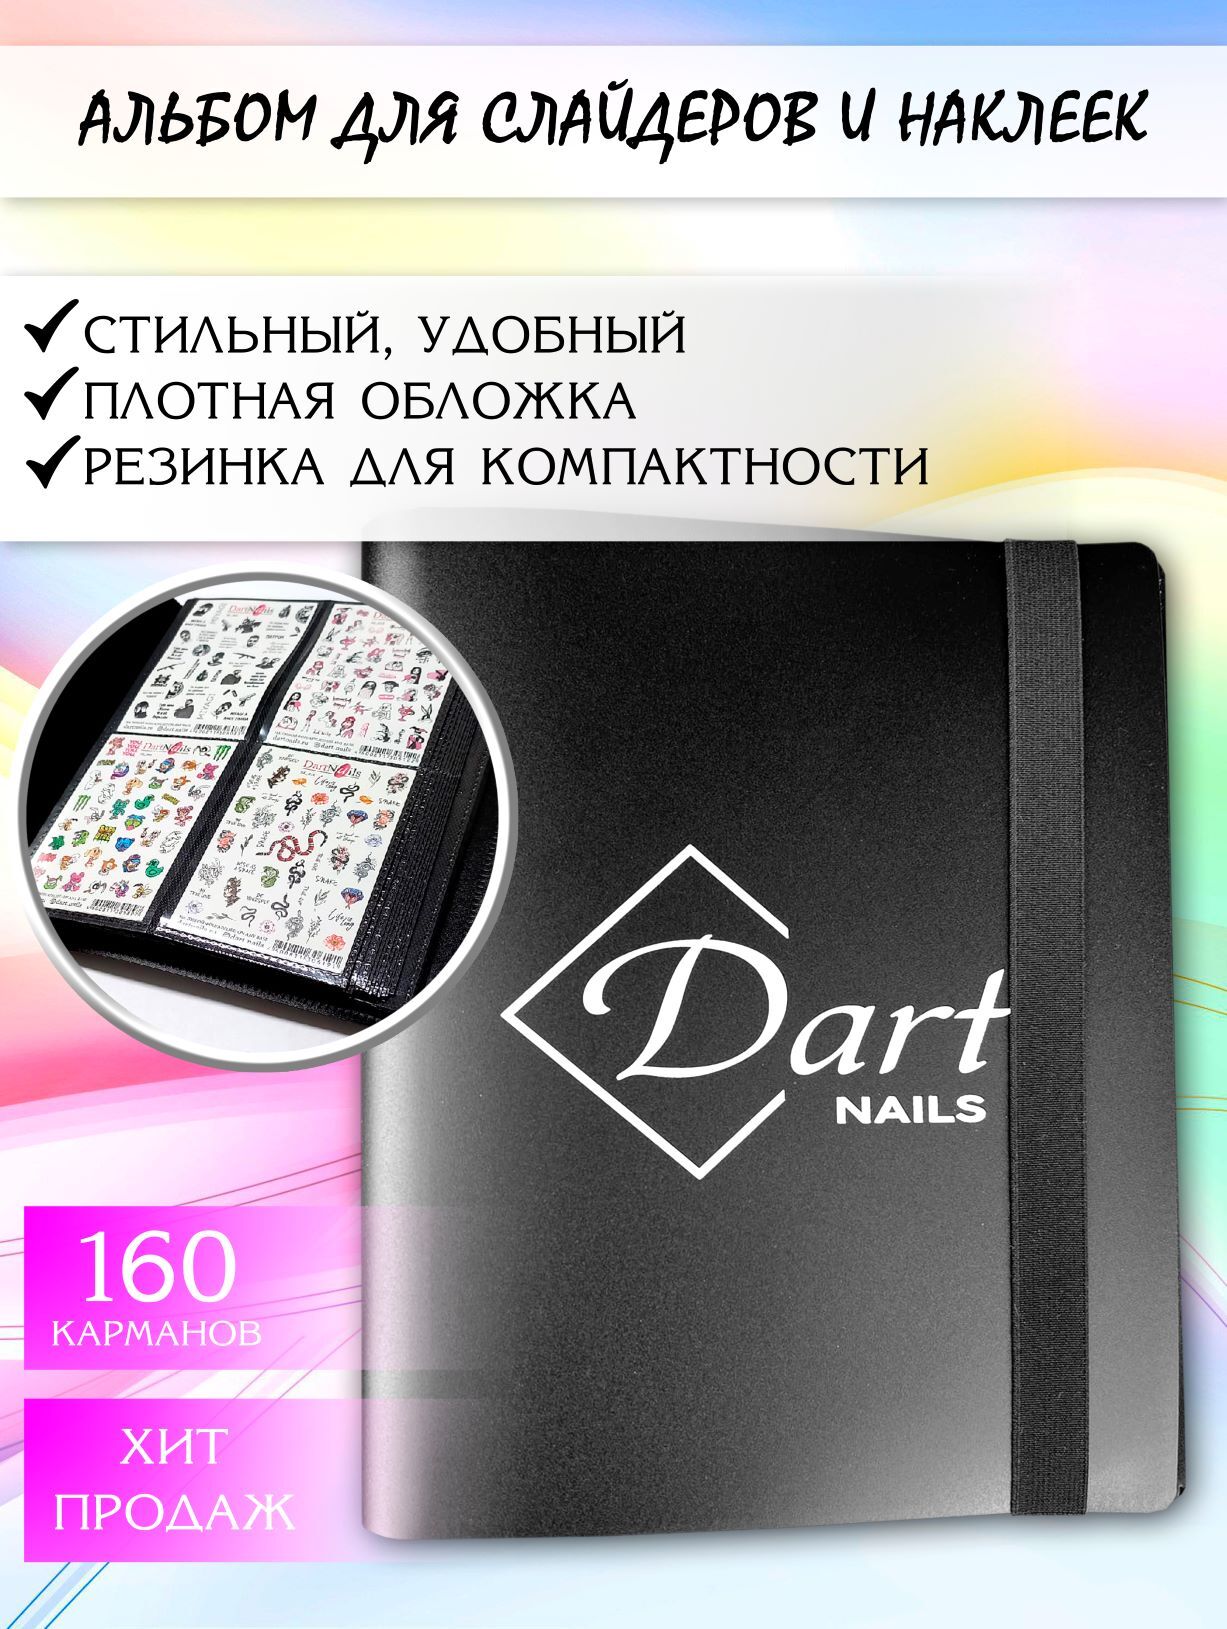 Альбом для слайдер-дизайна от Dart nails  на 160 карманов